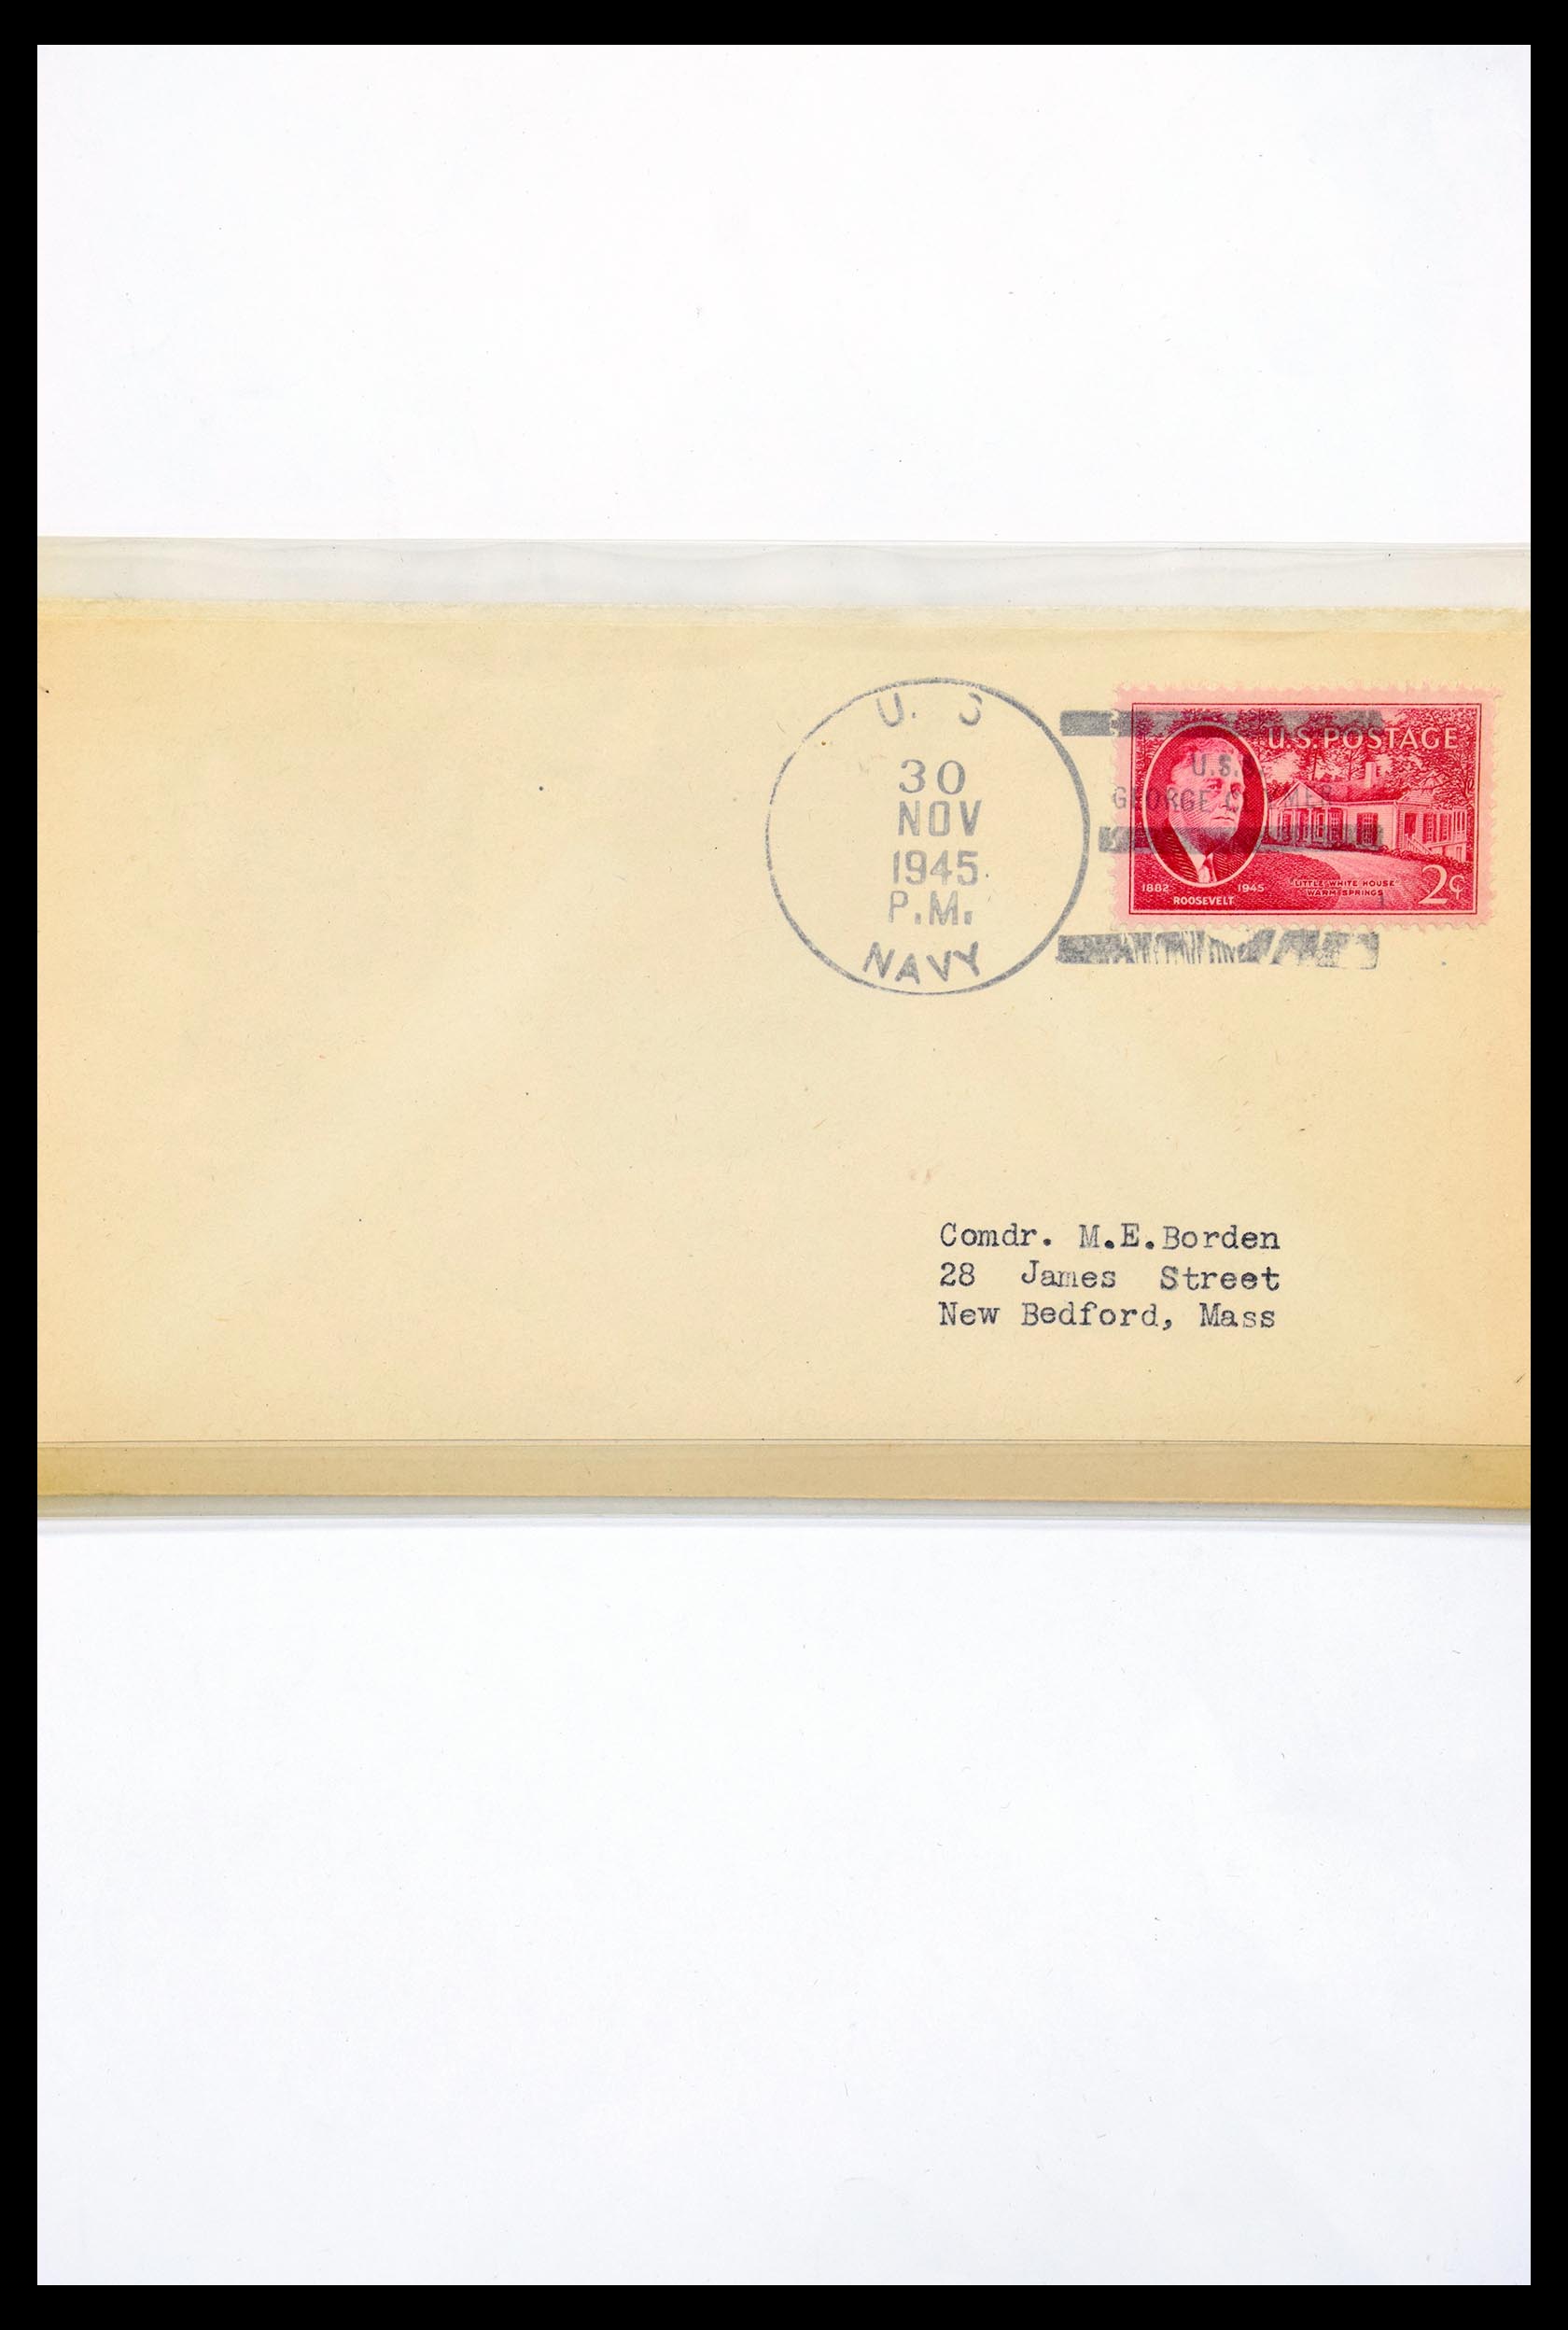 30341 305 - 30341 USA scheepspost brieven 1930-1970.